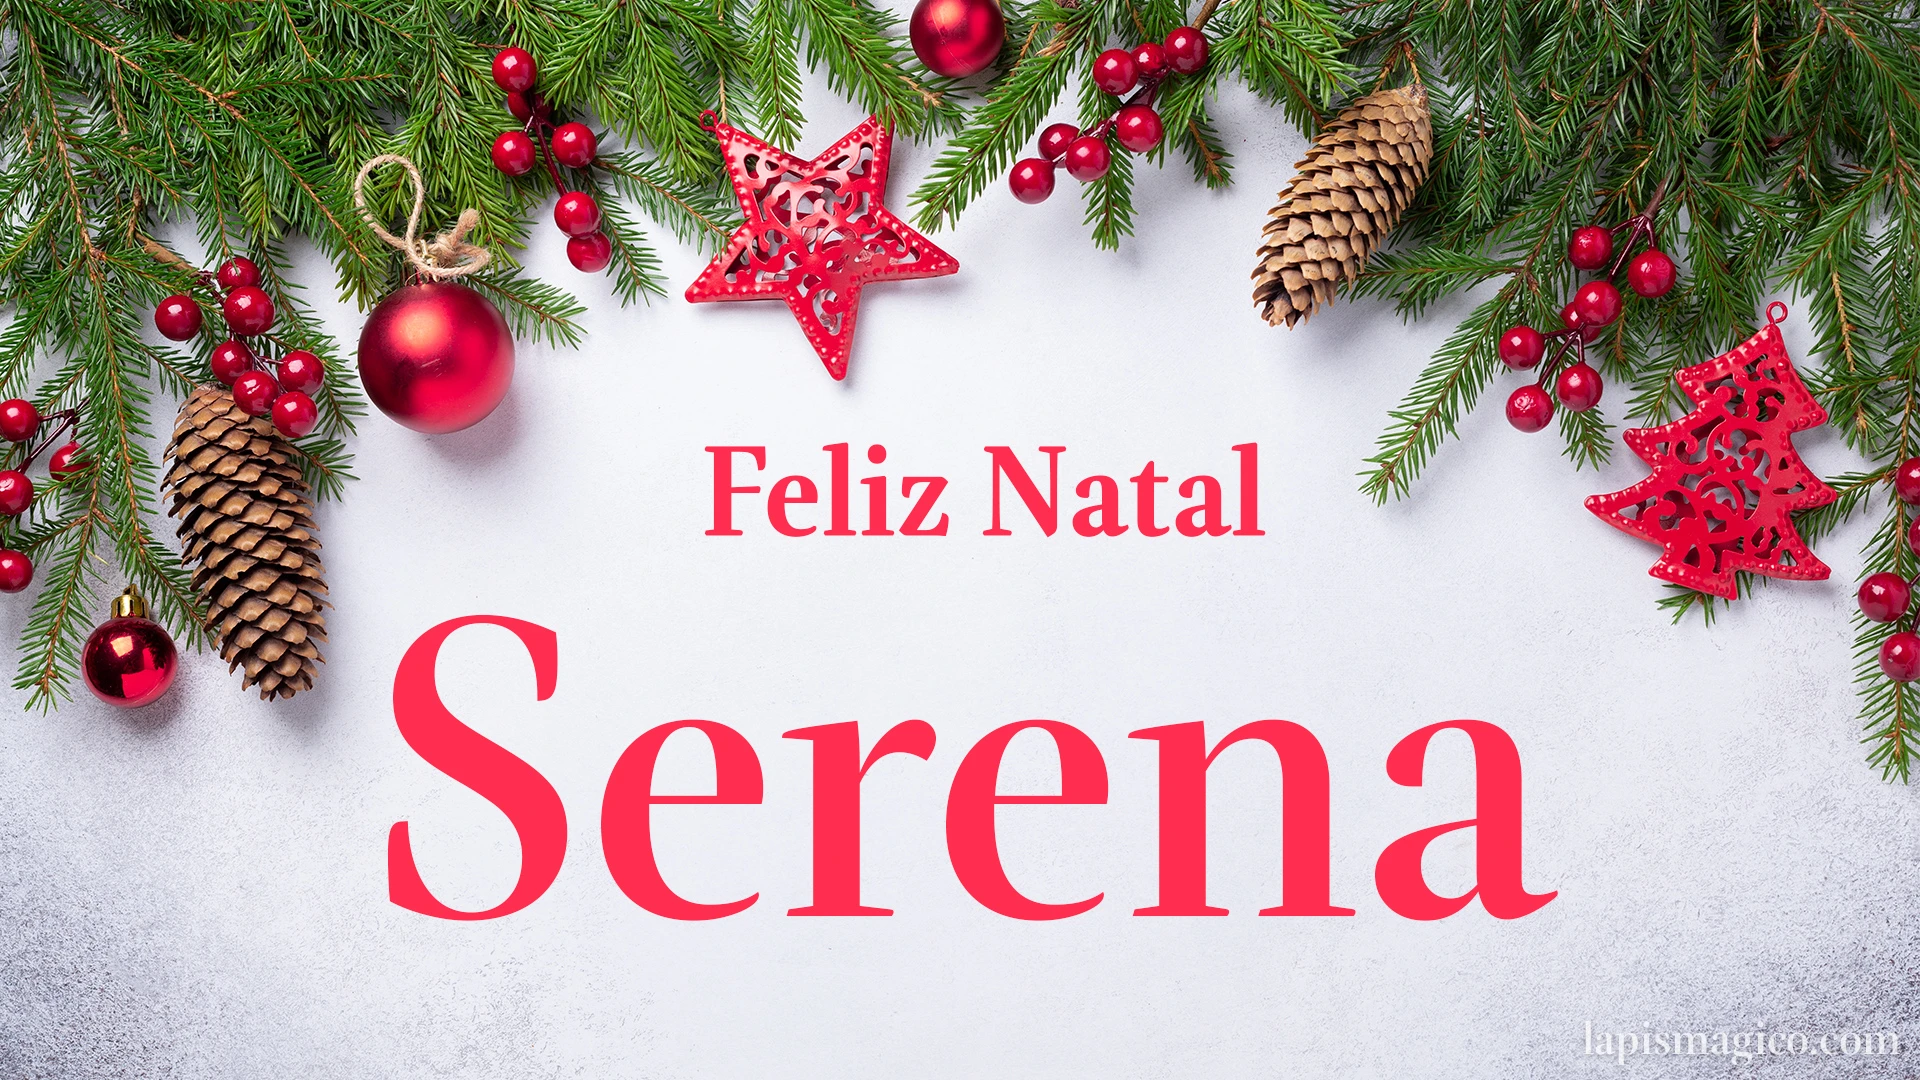 Oh Serena, cinco postais de Feliz Natal Postal com o teu nome